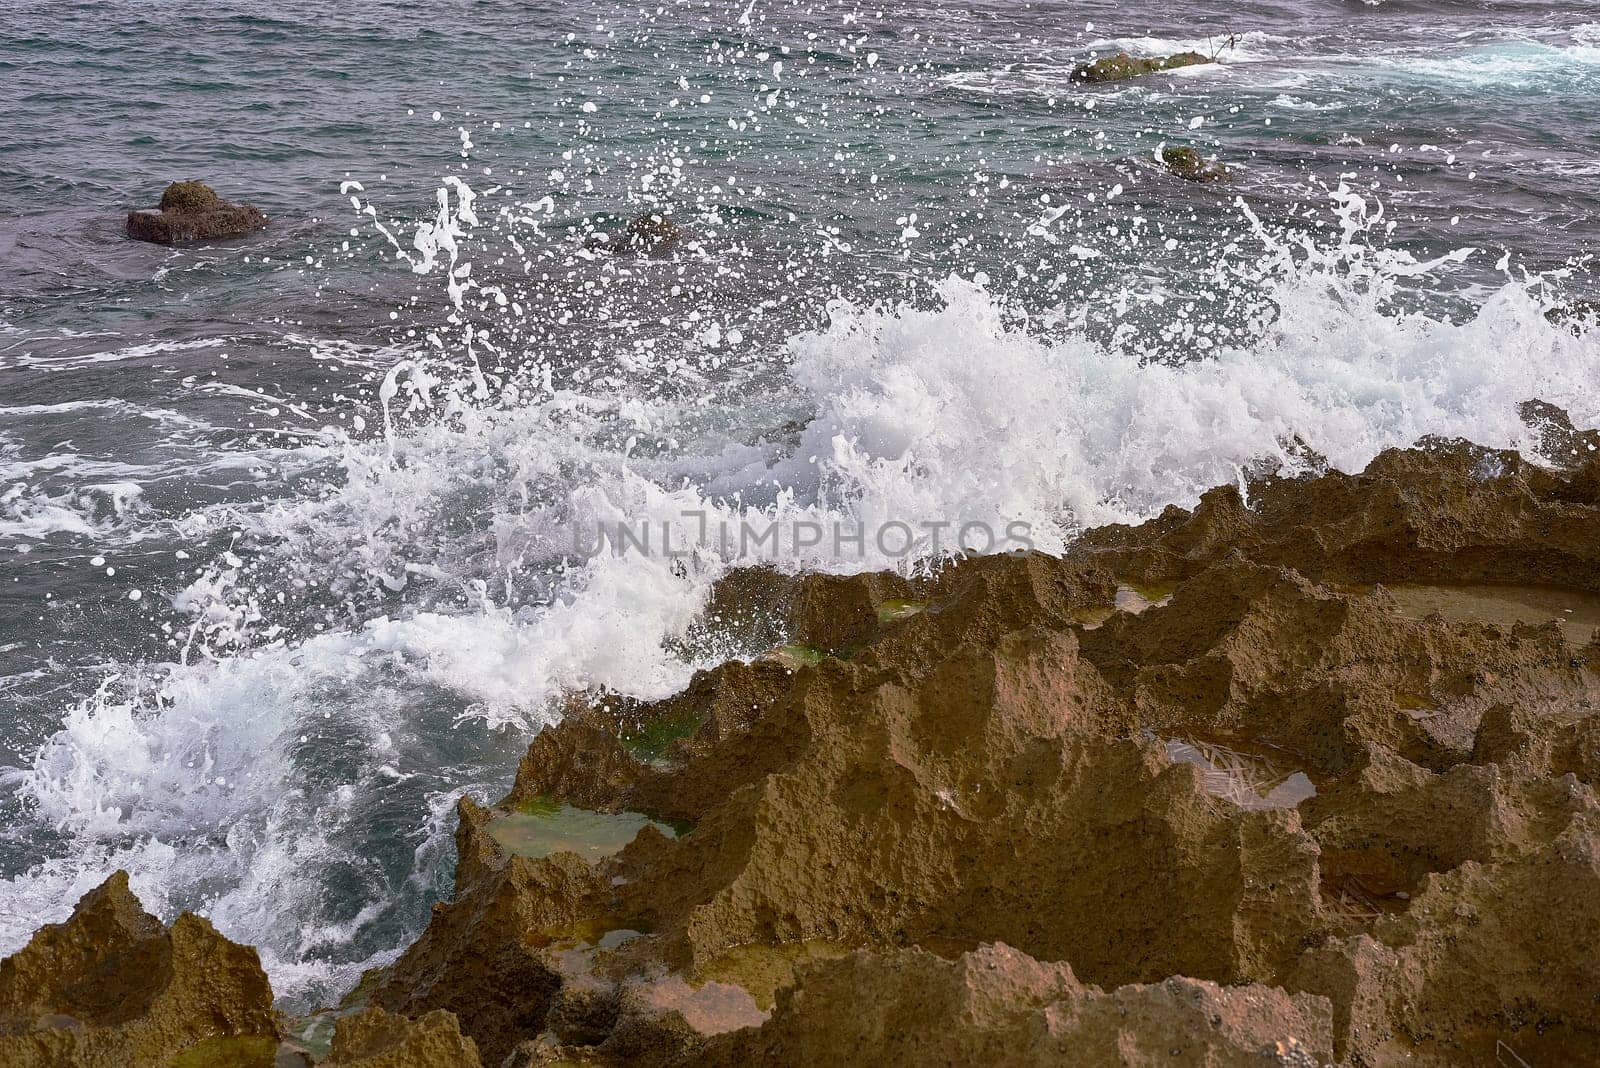 Mediterranean Coastal Rocks with Dynamic Wave Splashes by raul_ruiz